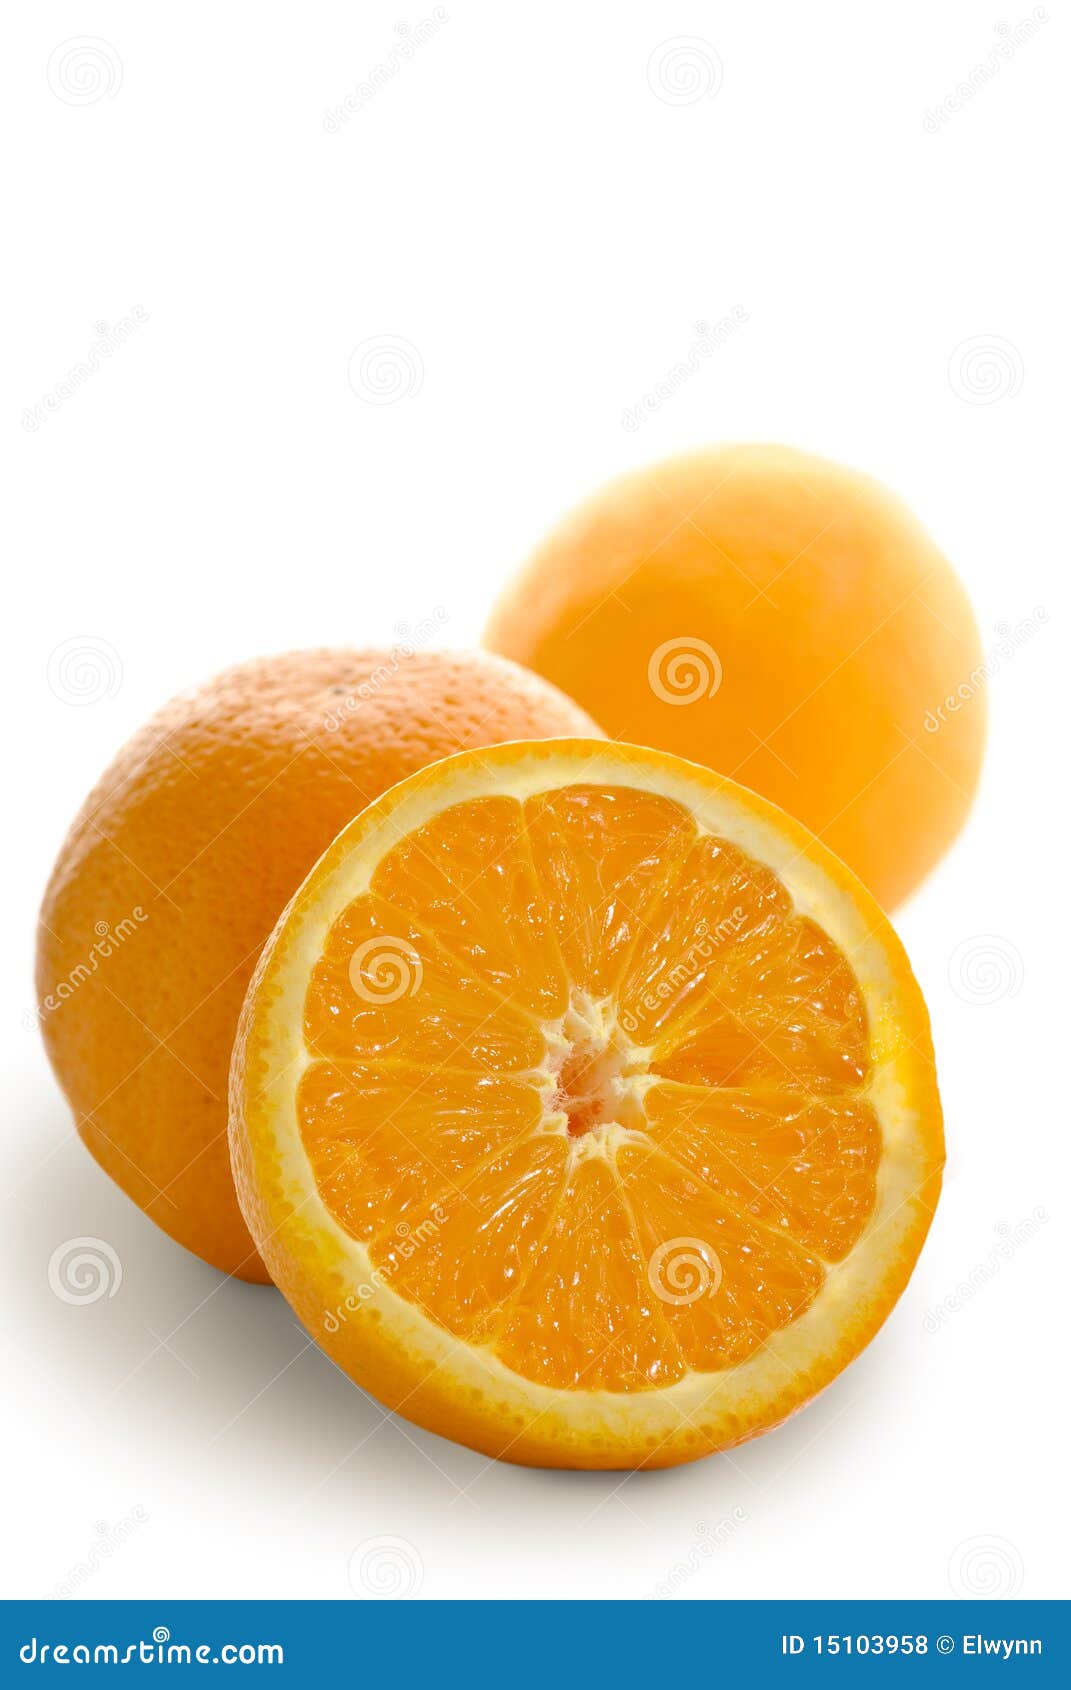 https://thumbs.dreamstime.com/z/oranges-15103958.jpg